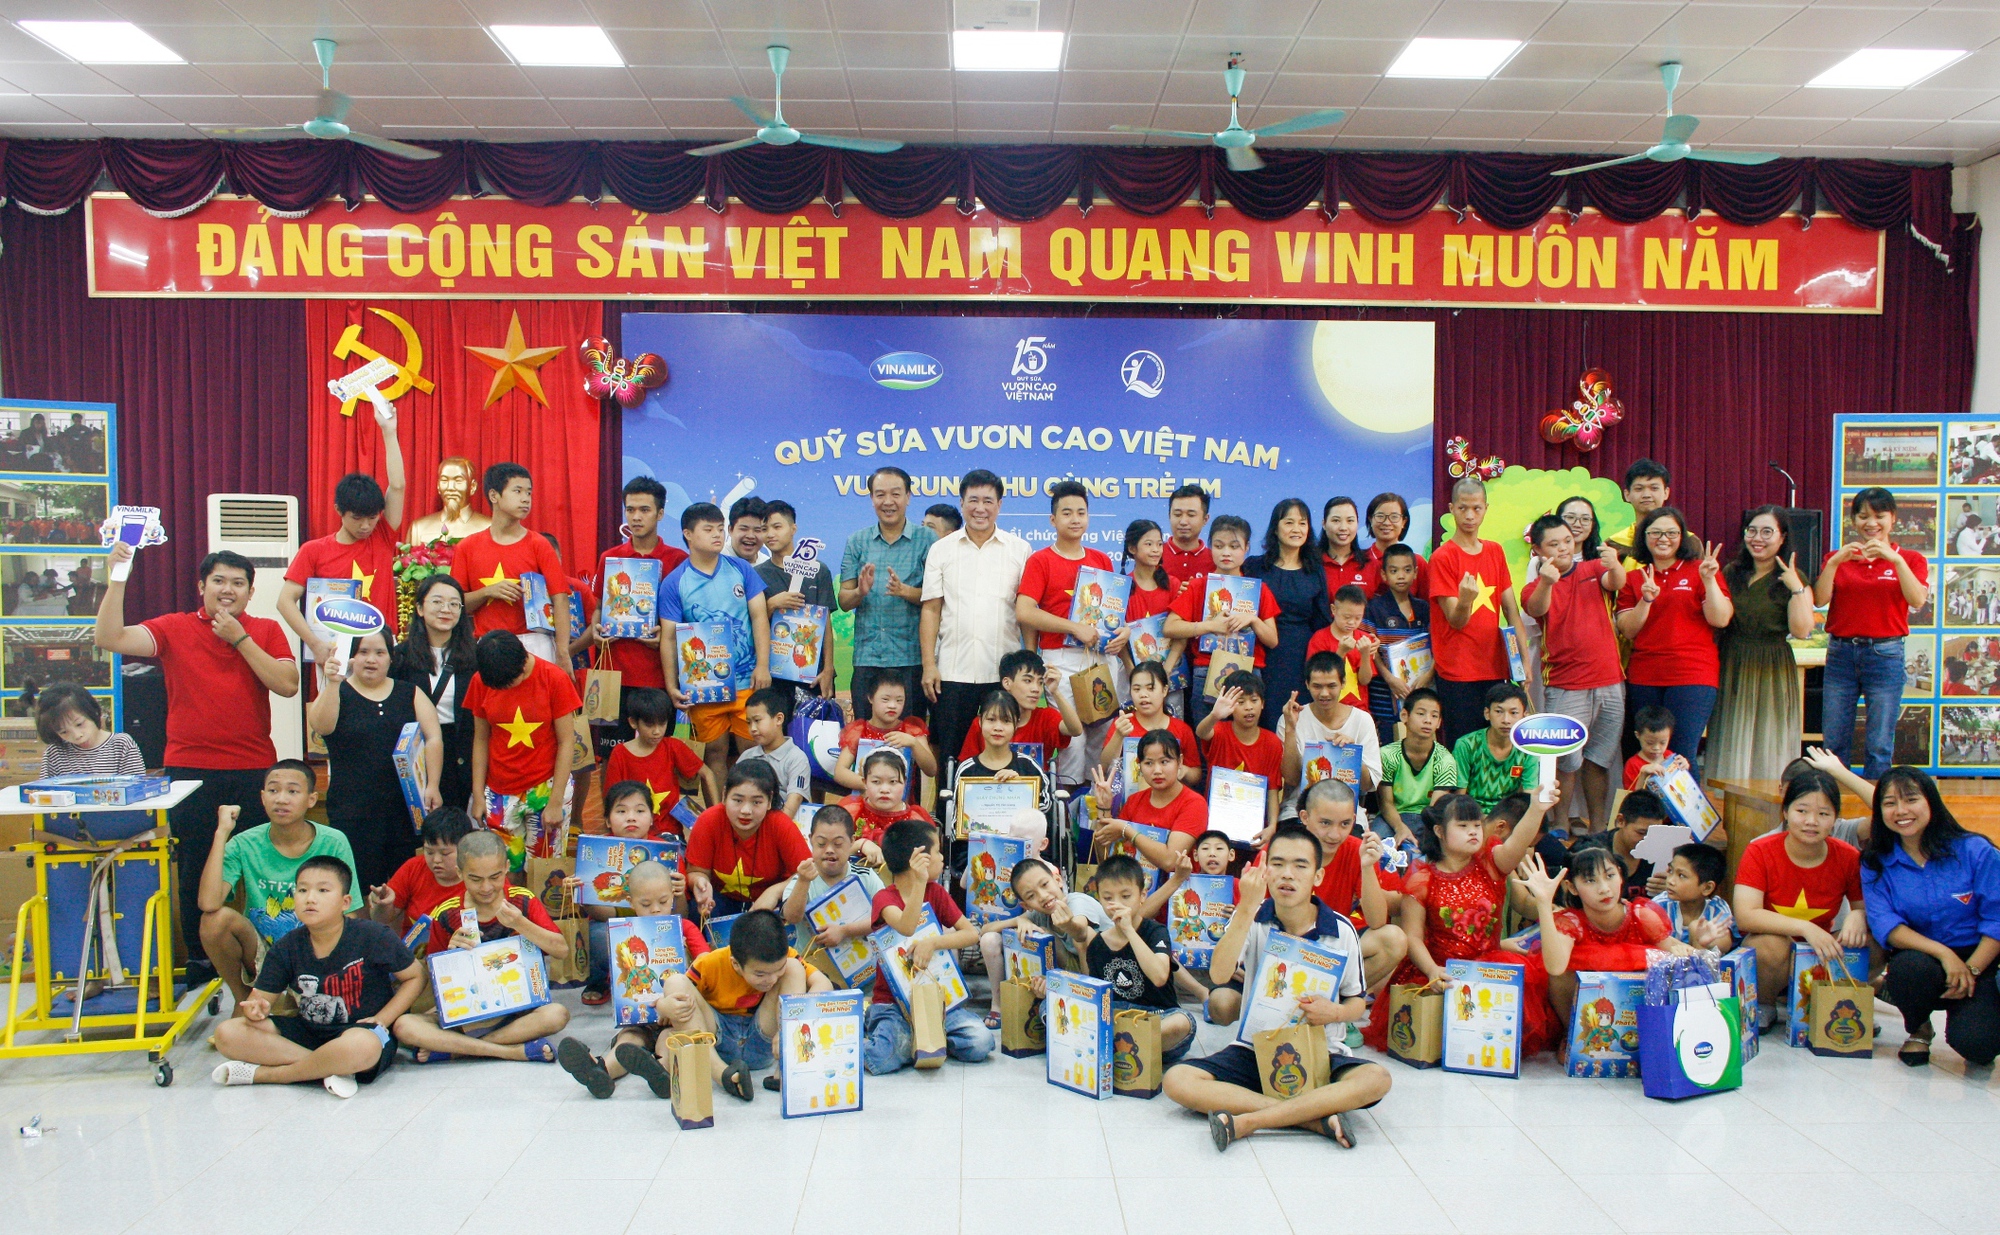 Mùa trung thu ấm áp trong hành trình 15 năm của Quỹ sữa Vươn cao Việt Nam - Ảnh 1.